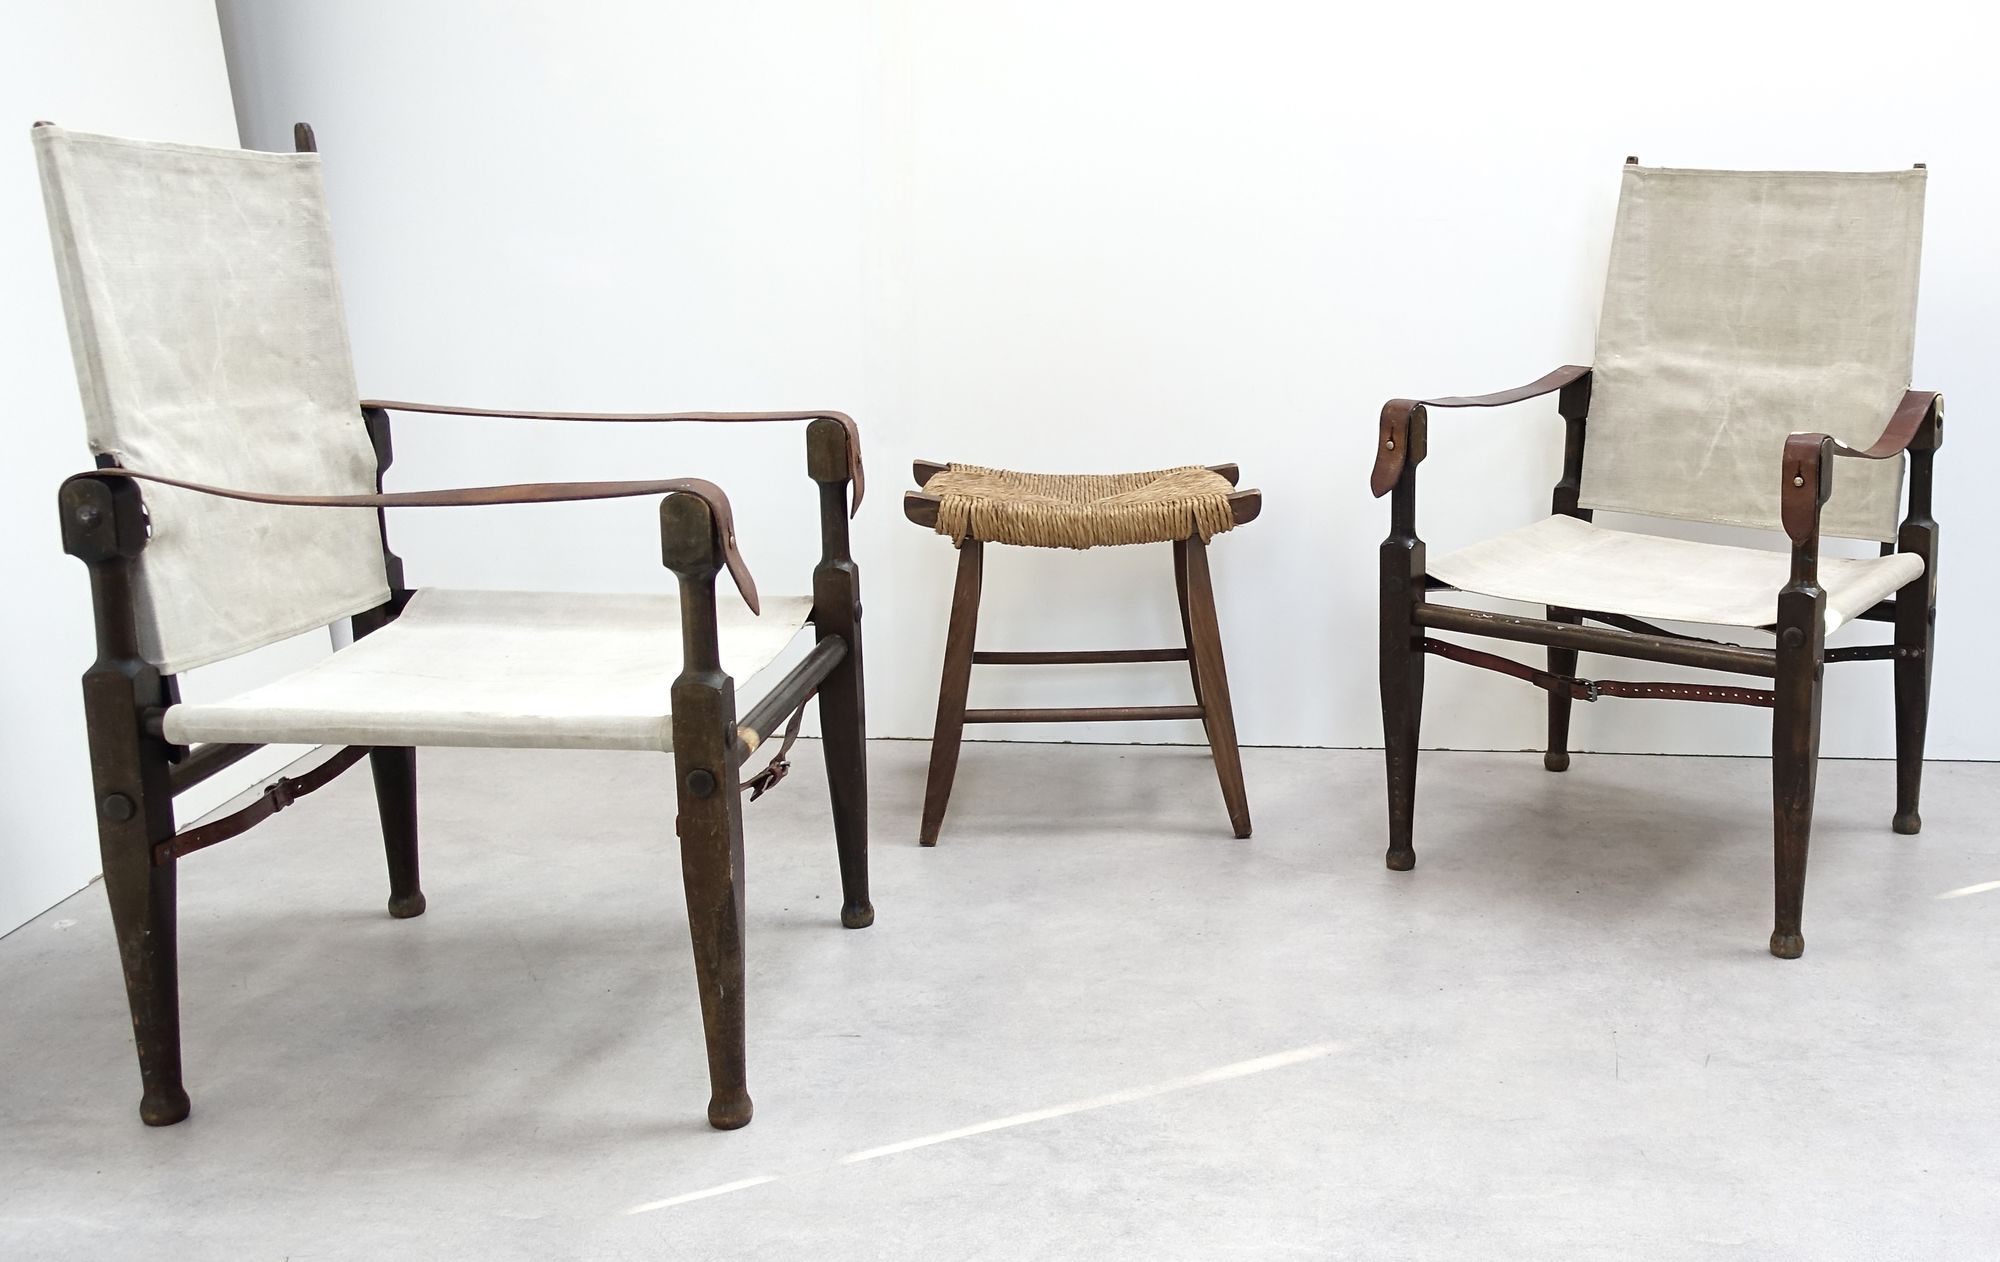 Colonial chairs designed by Swiss architect Wilhelm Kienzle